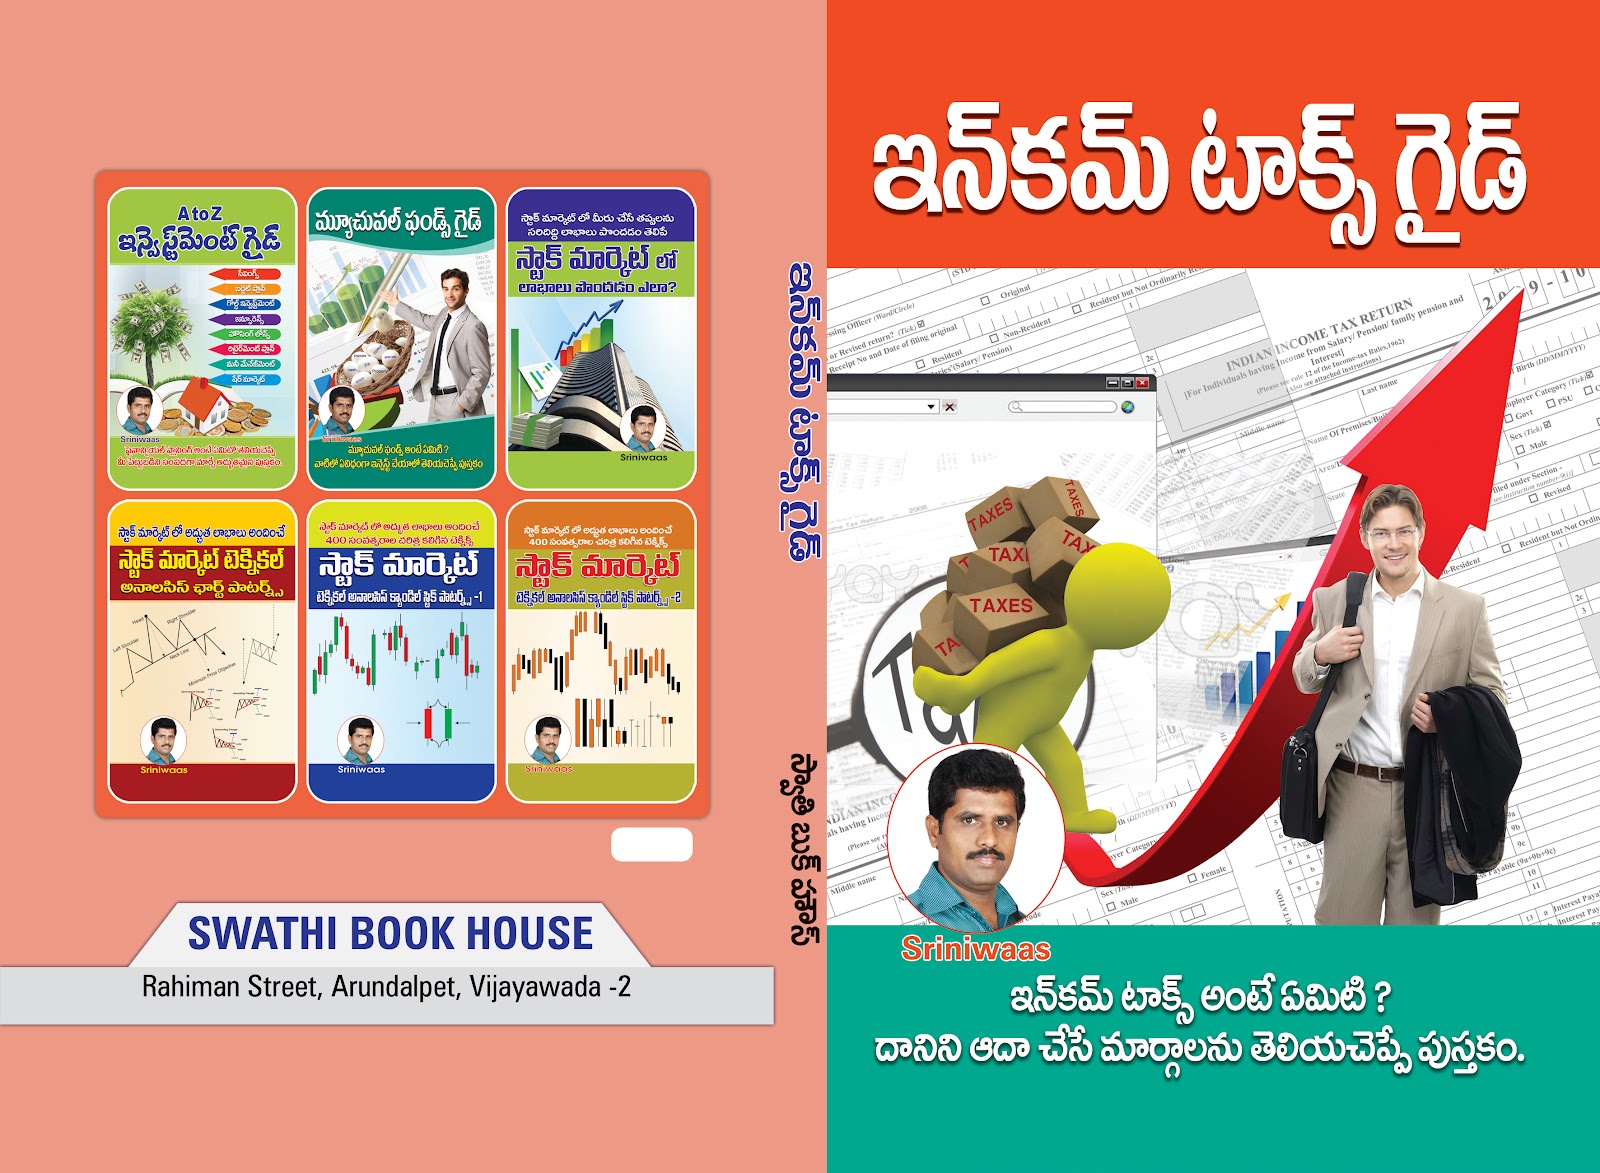 Books First Telugu Financial Educational Blog à°® à°• - 